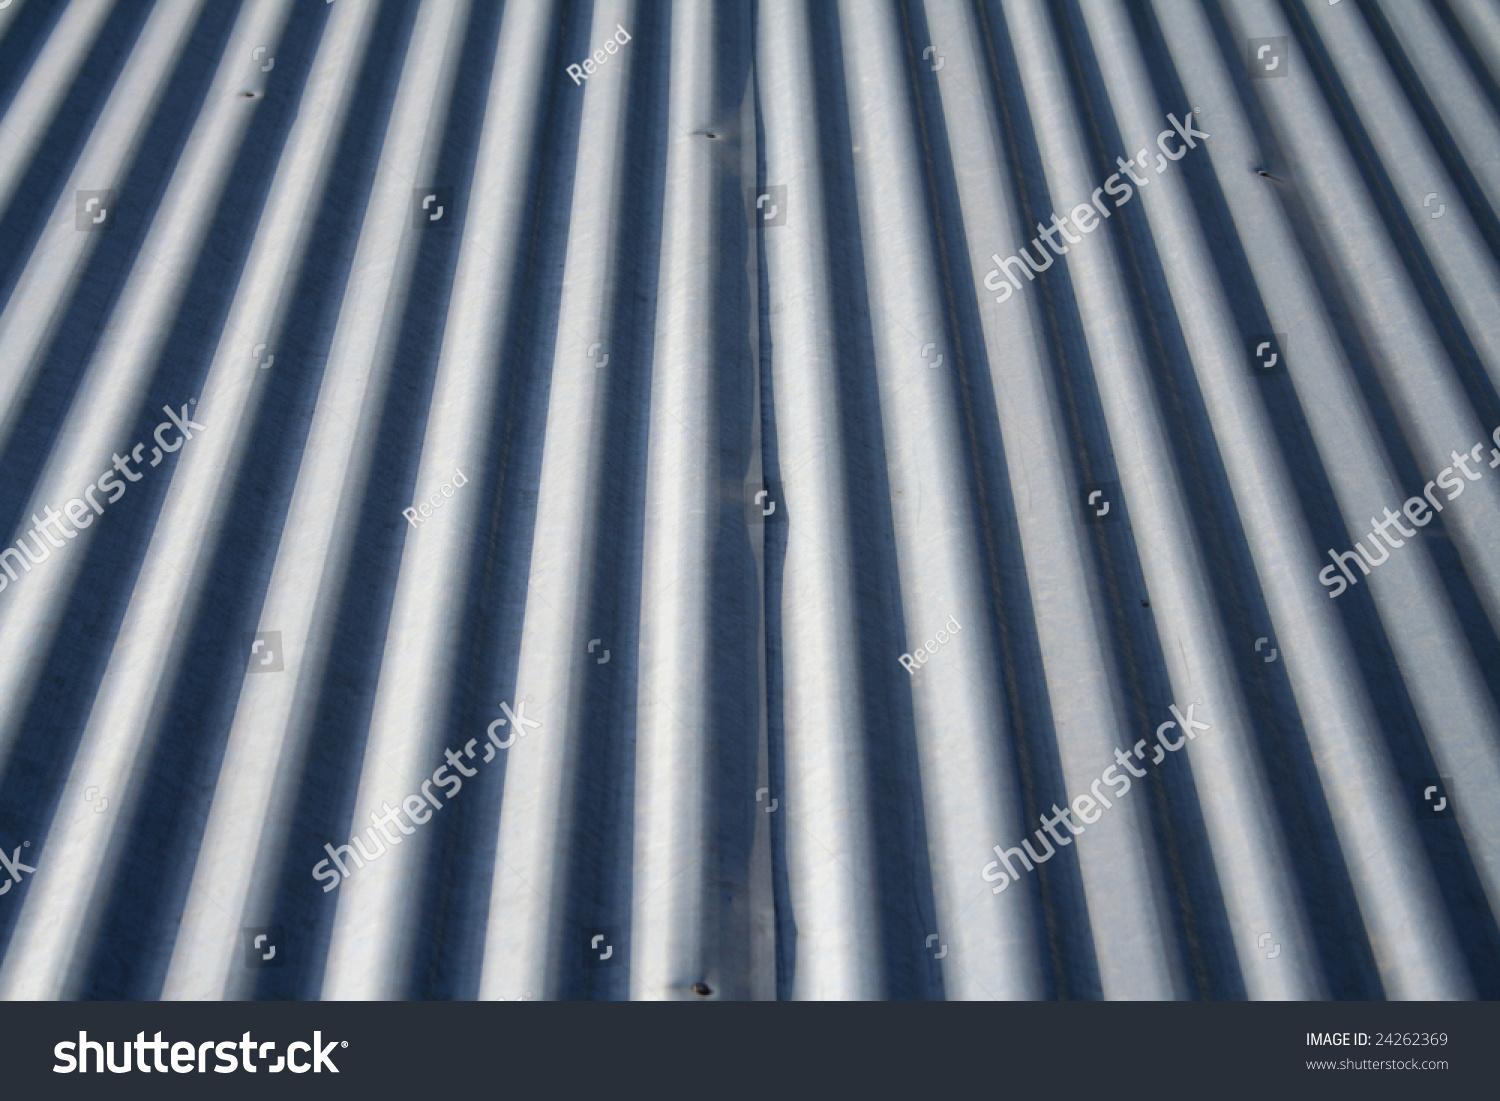 Metal Roof Texture Stock Photo 24262369 : Shutterstock